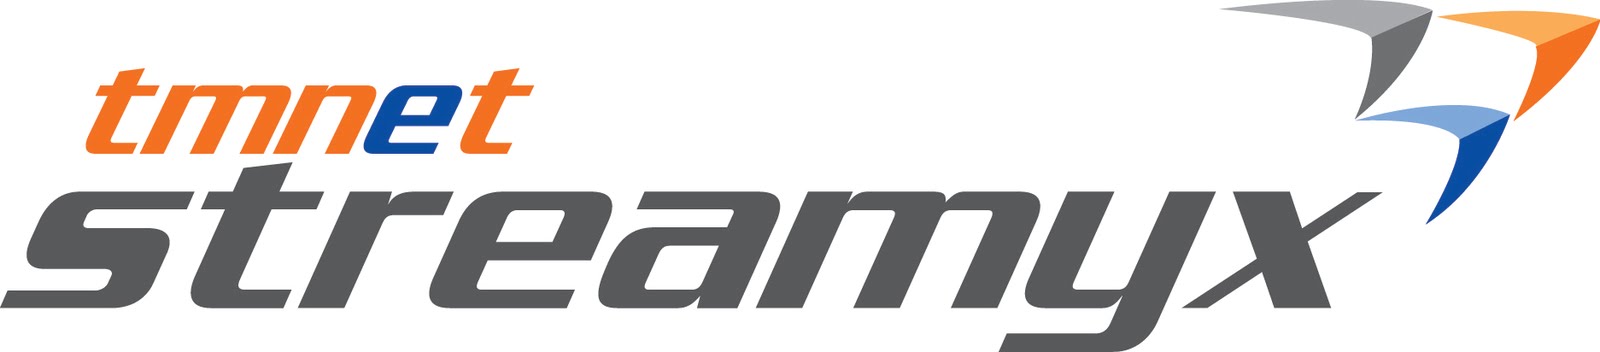 tmnet streamyx Logo photo - 1